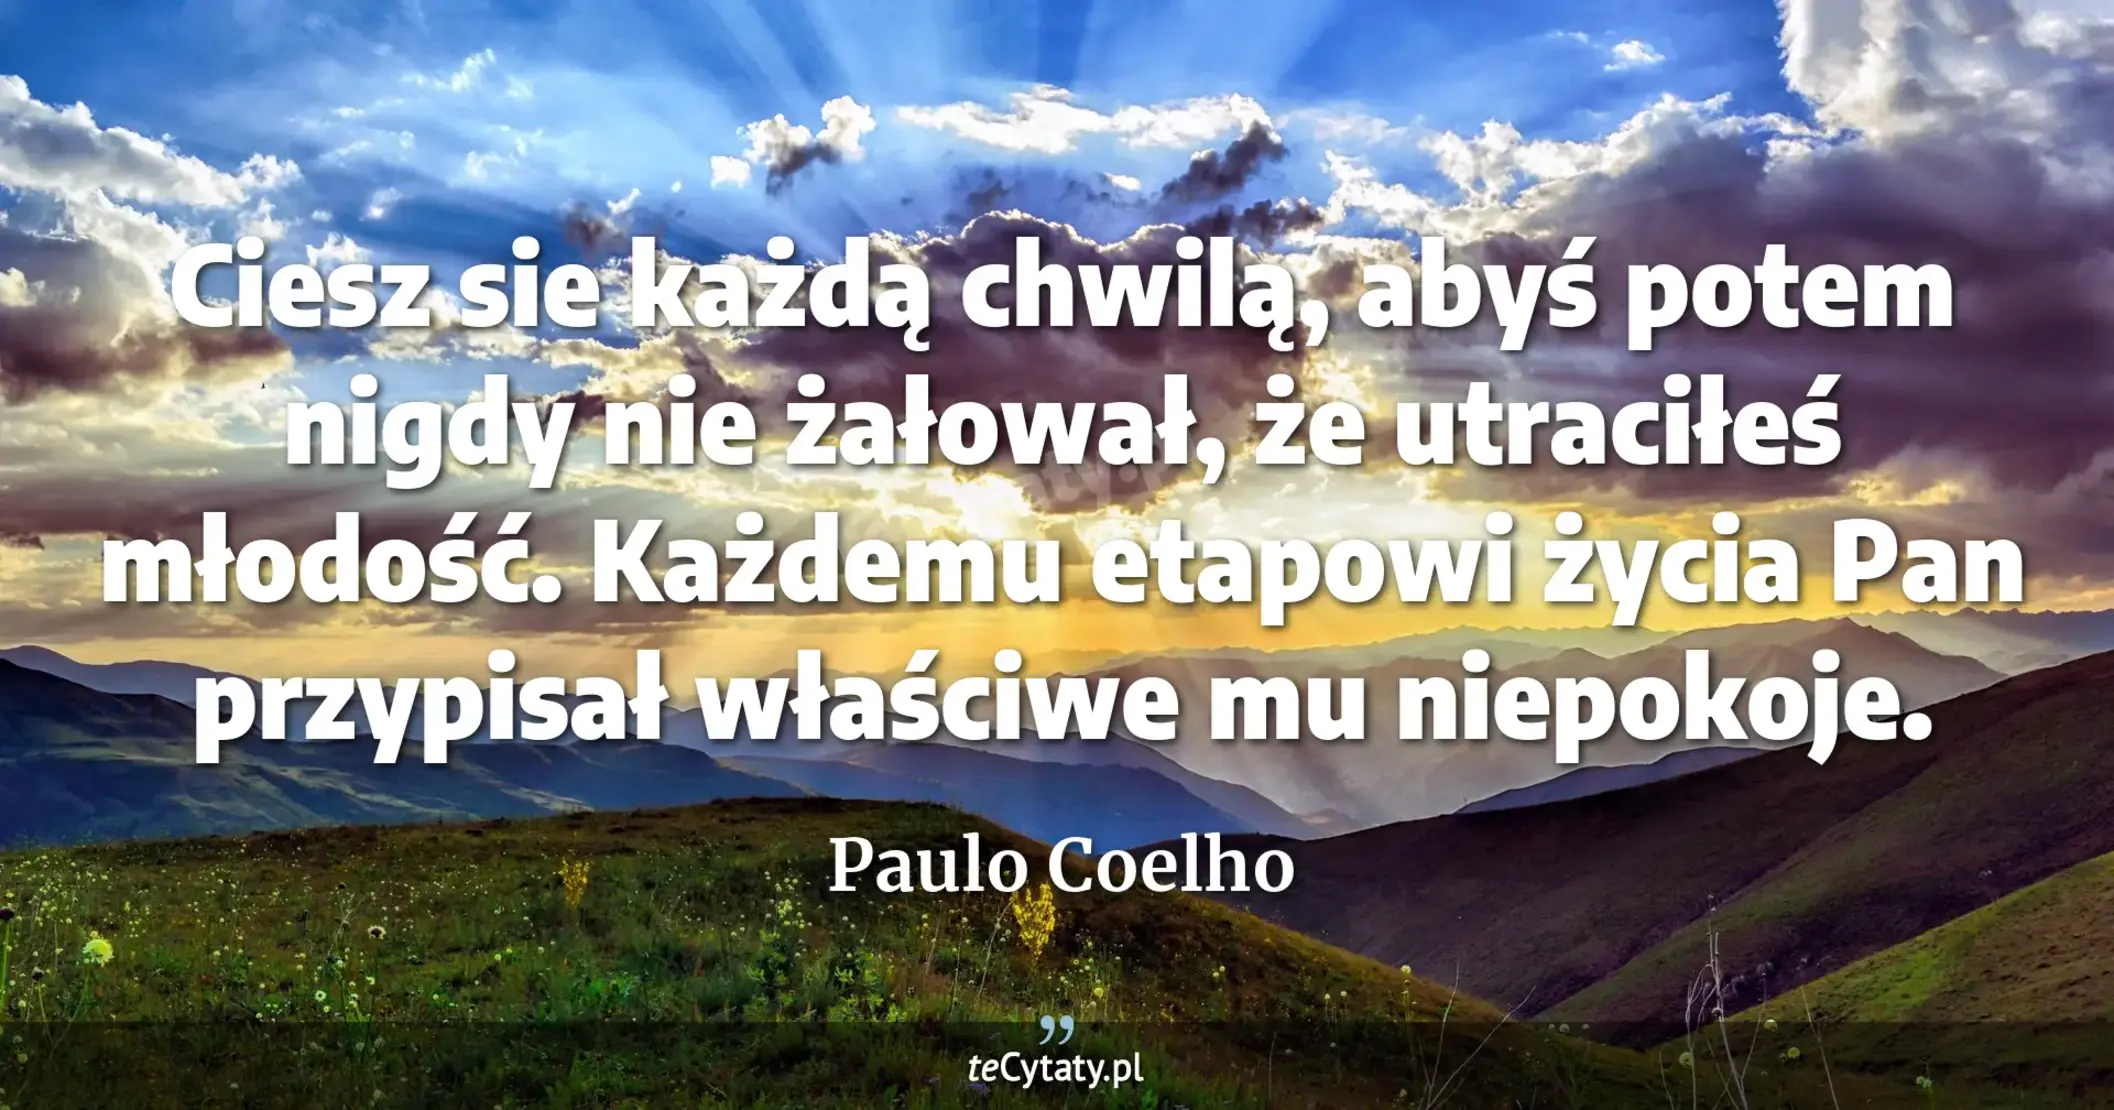 Ciesz sie każdą chwilą, abyś potem nigdy nie żałował, że utraciłeś młodość. Każdemu etapowi życia Pan przypisał właściwe mu niepokoje. - Paulo Coelho